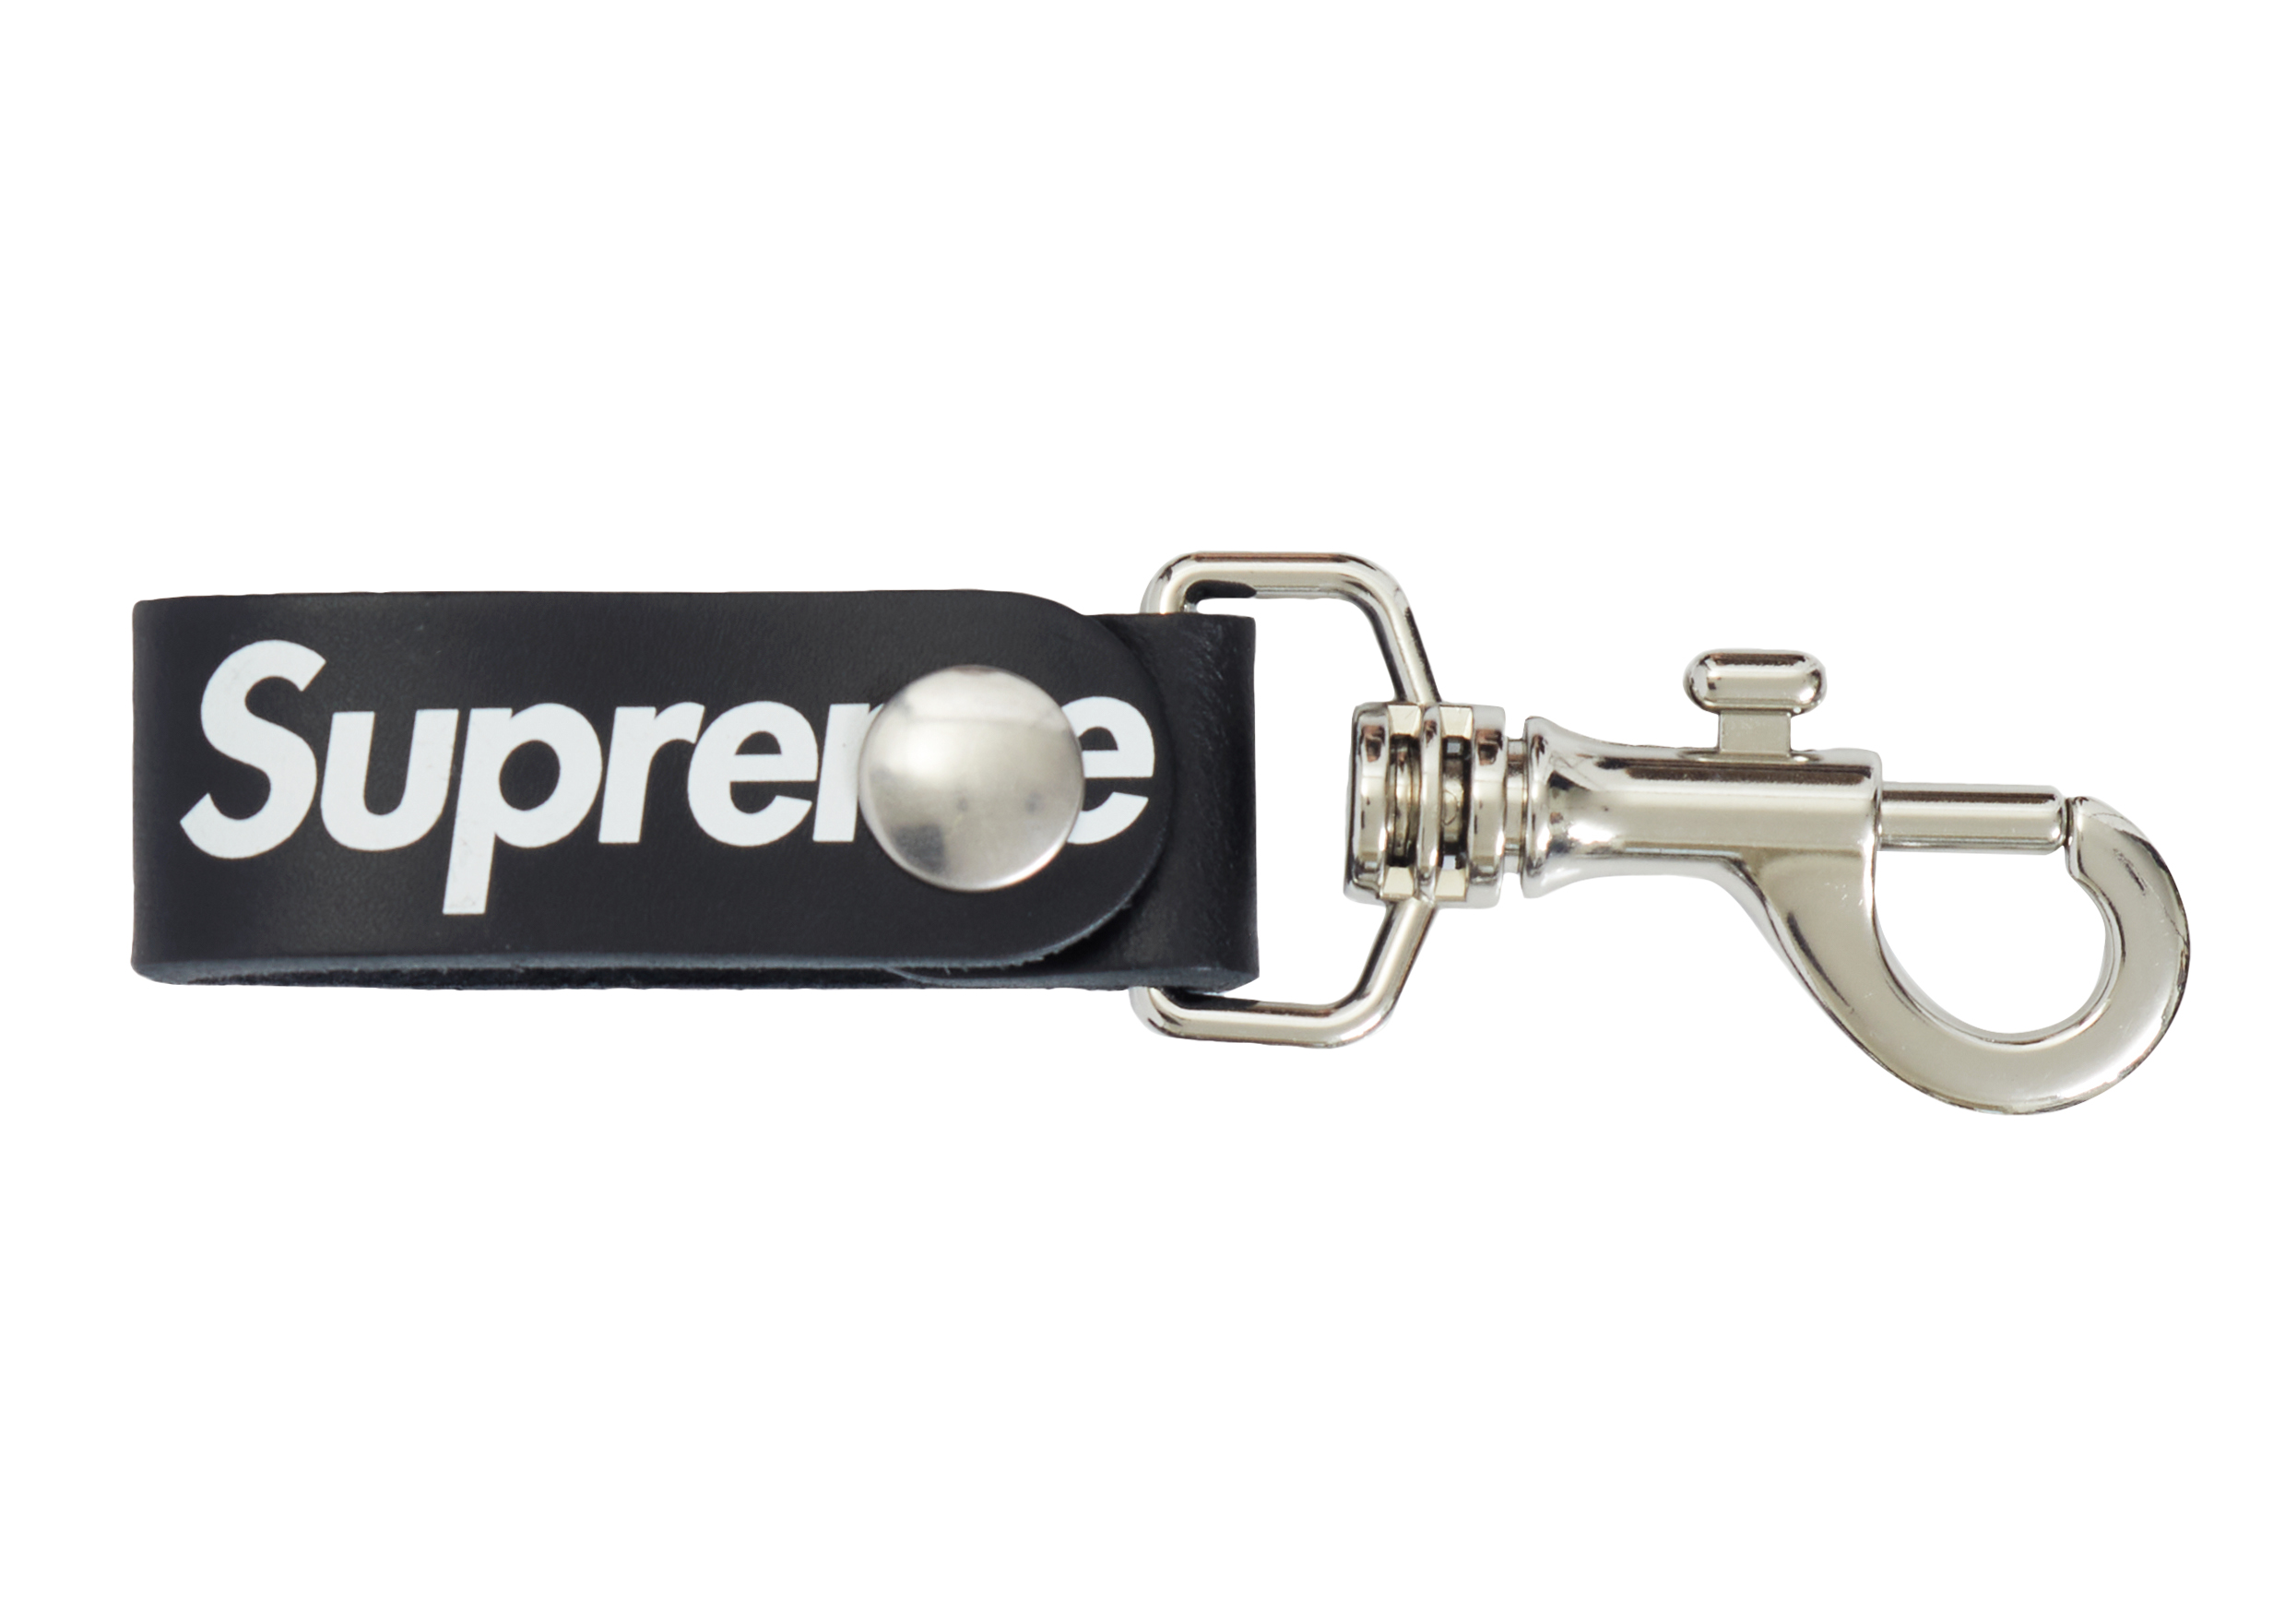 Supreme Leather Key Loop Black